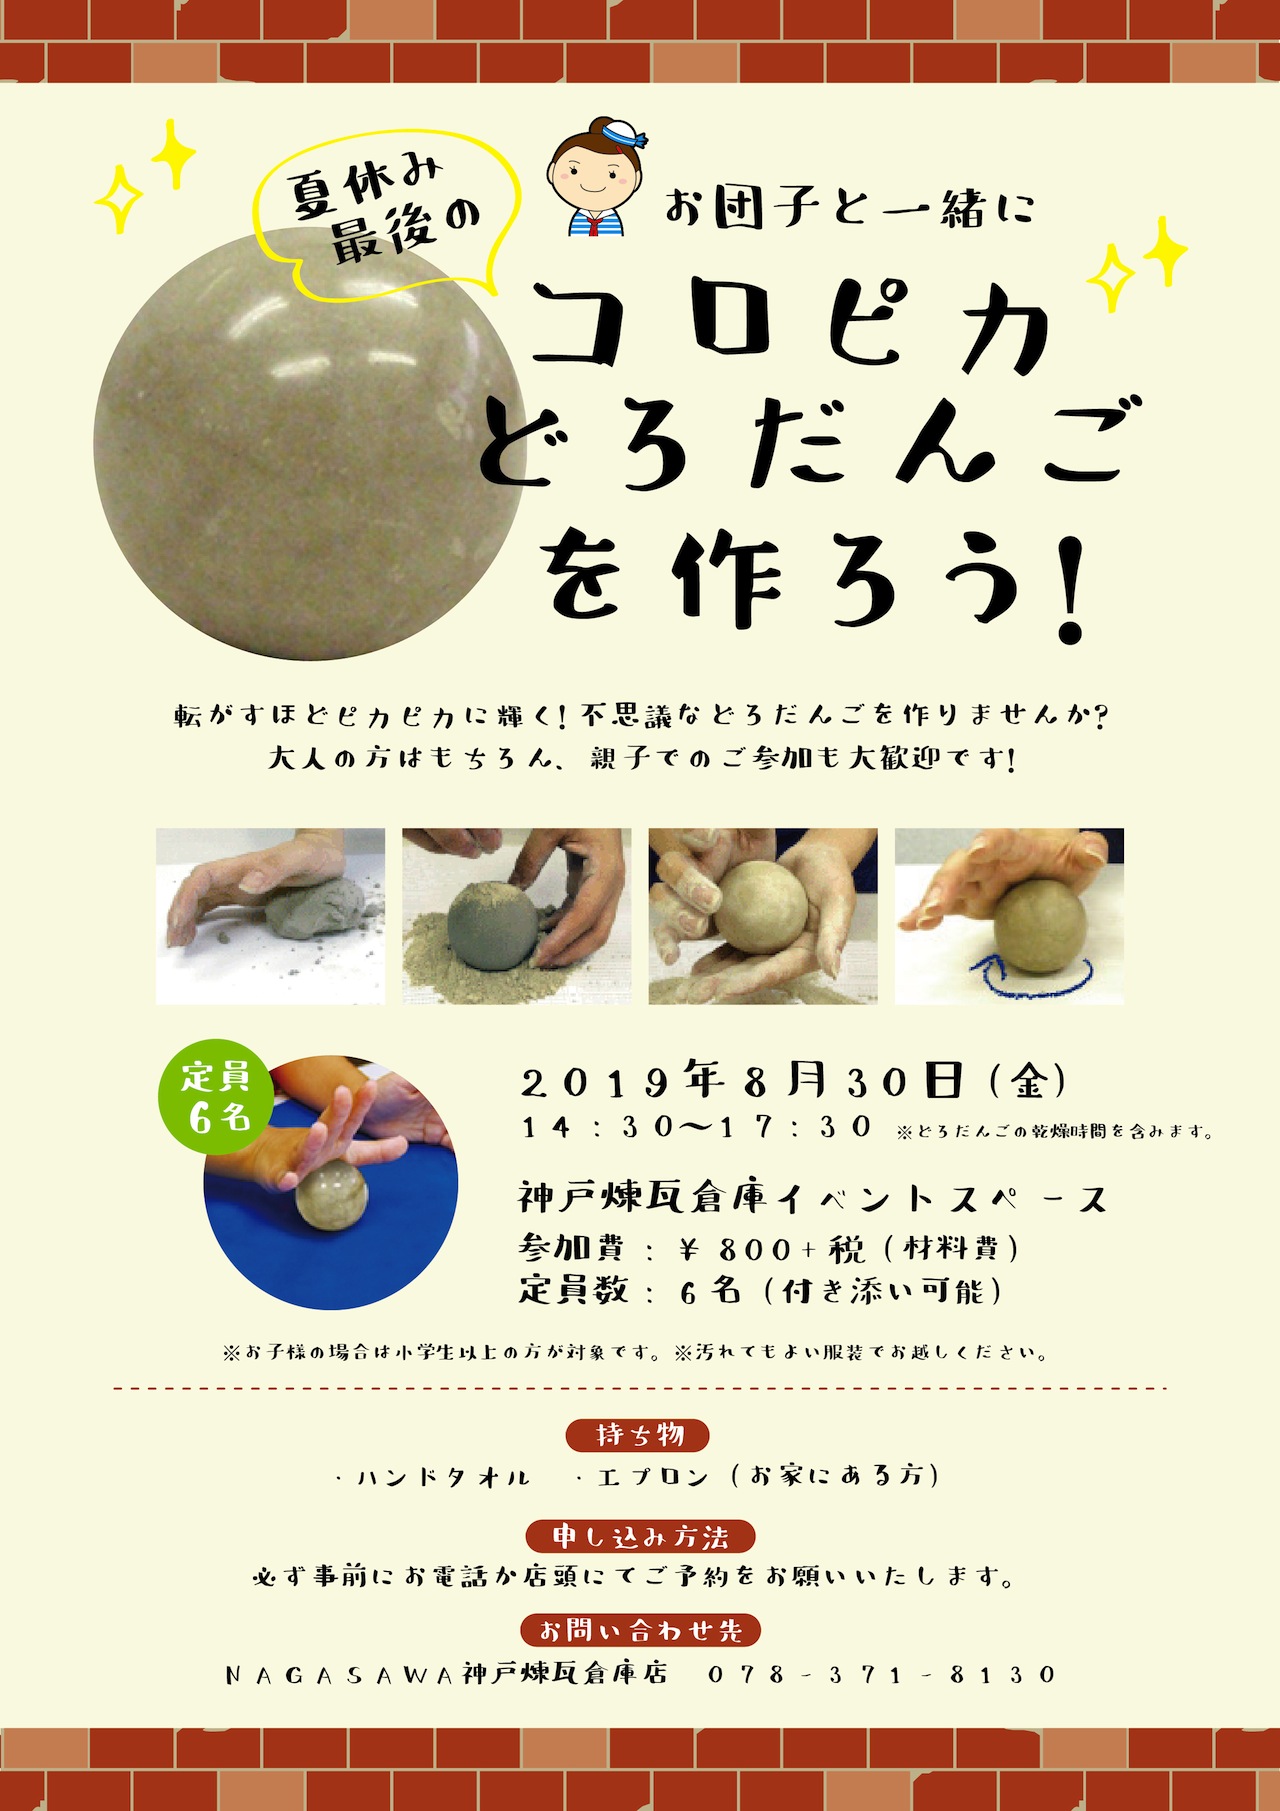 【神戸煉瓦倉庫店】コロコロすればピカピカにかがやく『どろだんご』作りを楽しもう！